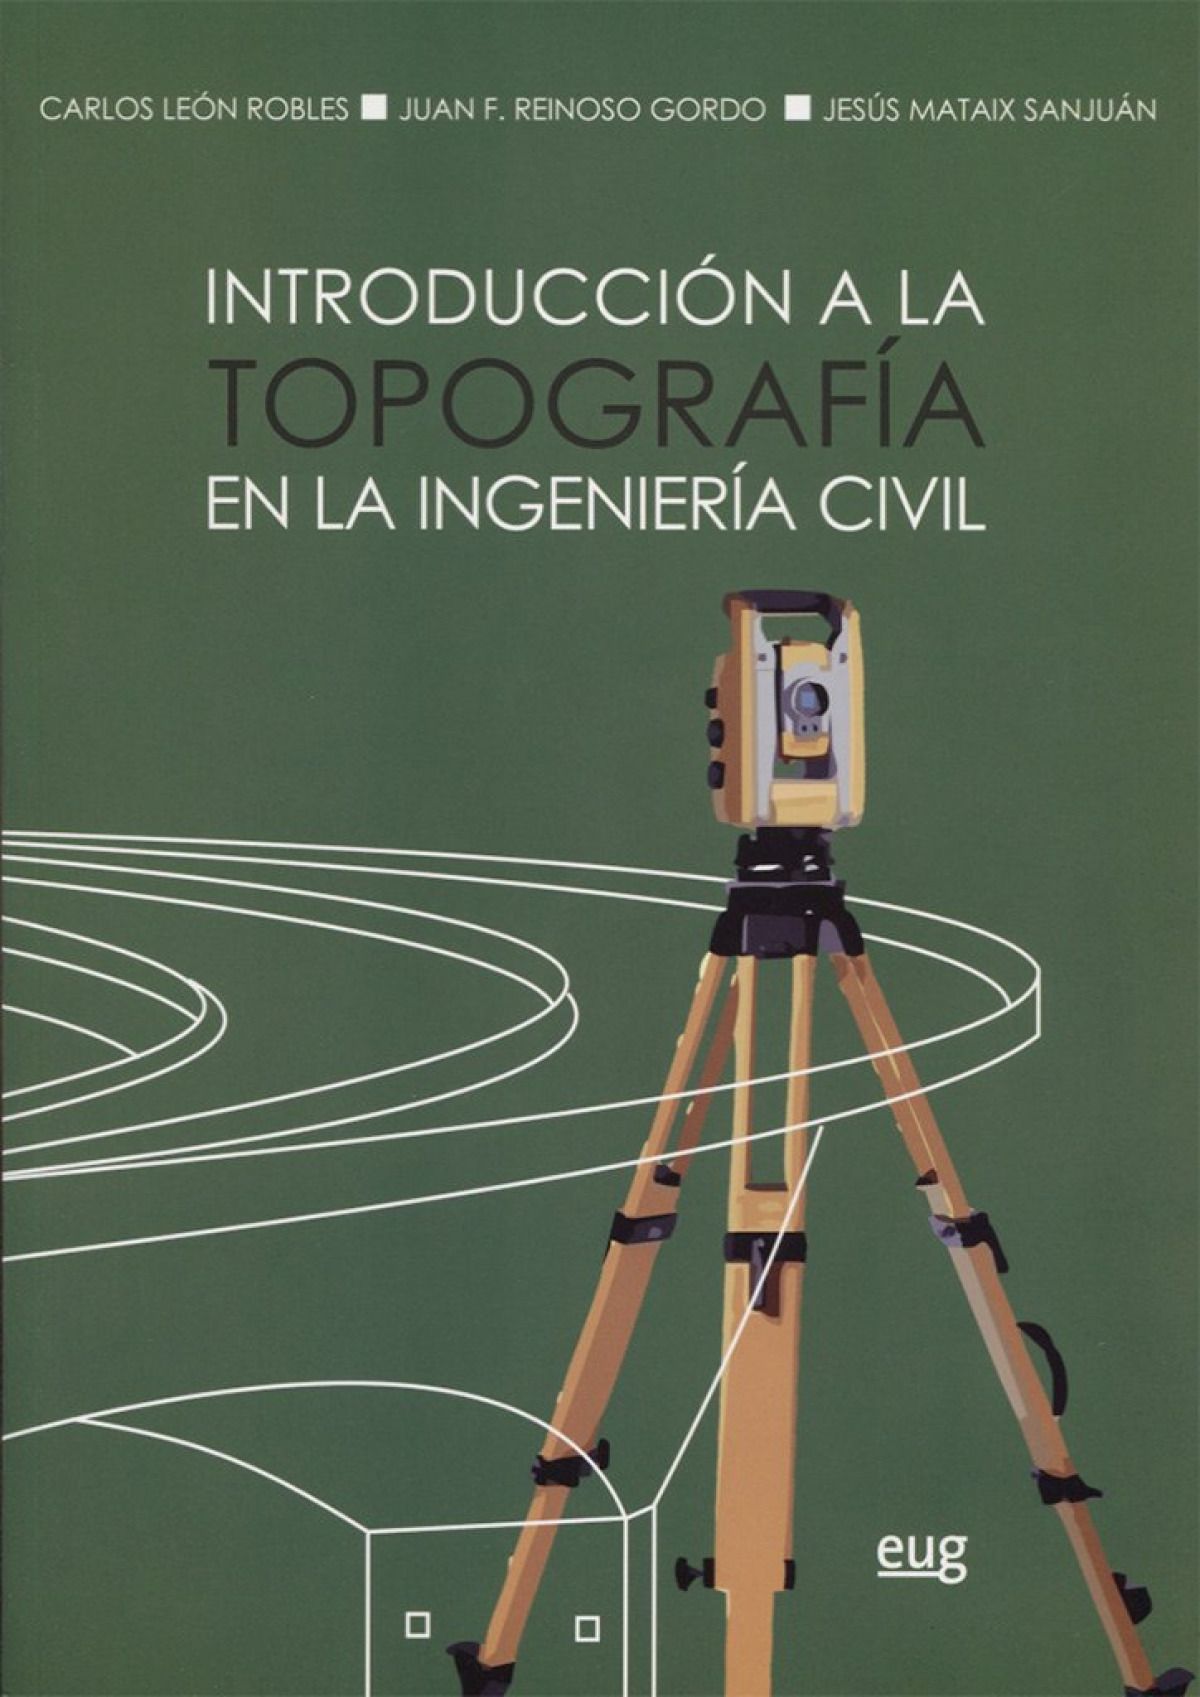 IntroducciÓn a la topografÍa en la ingenierÍa civil - León, Carlos/Reinoso, Juan/Mataix, Jesús